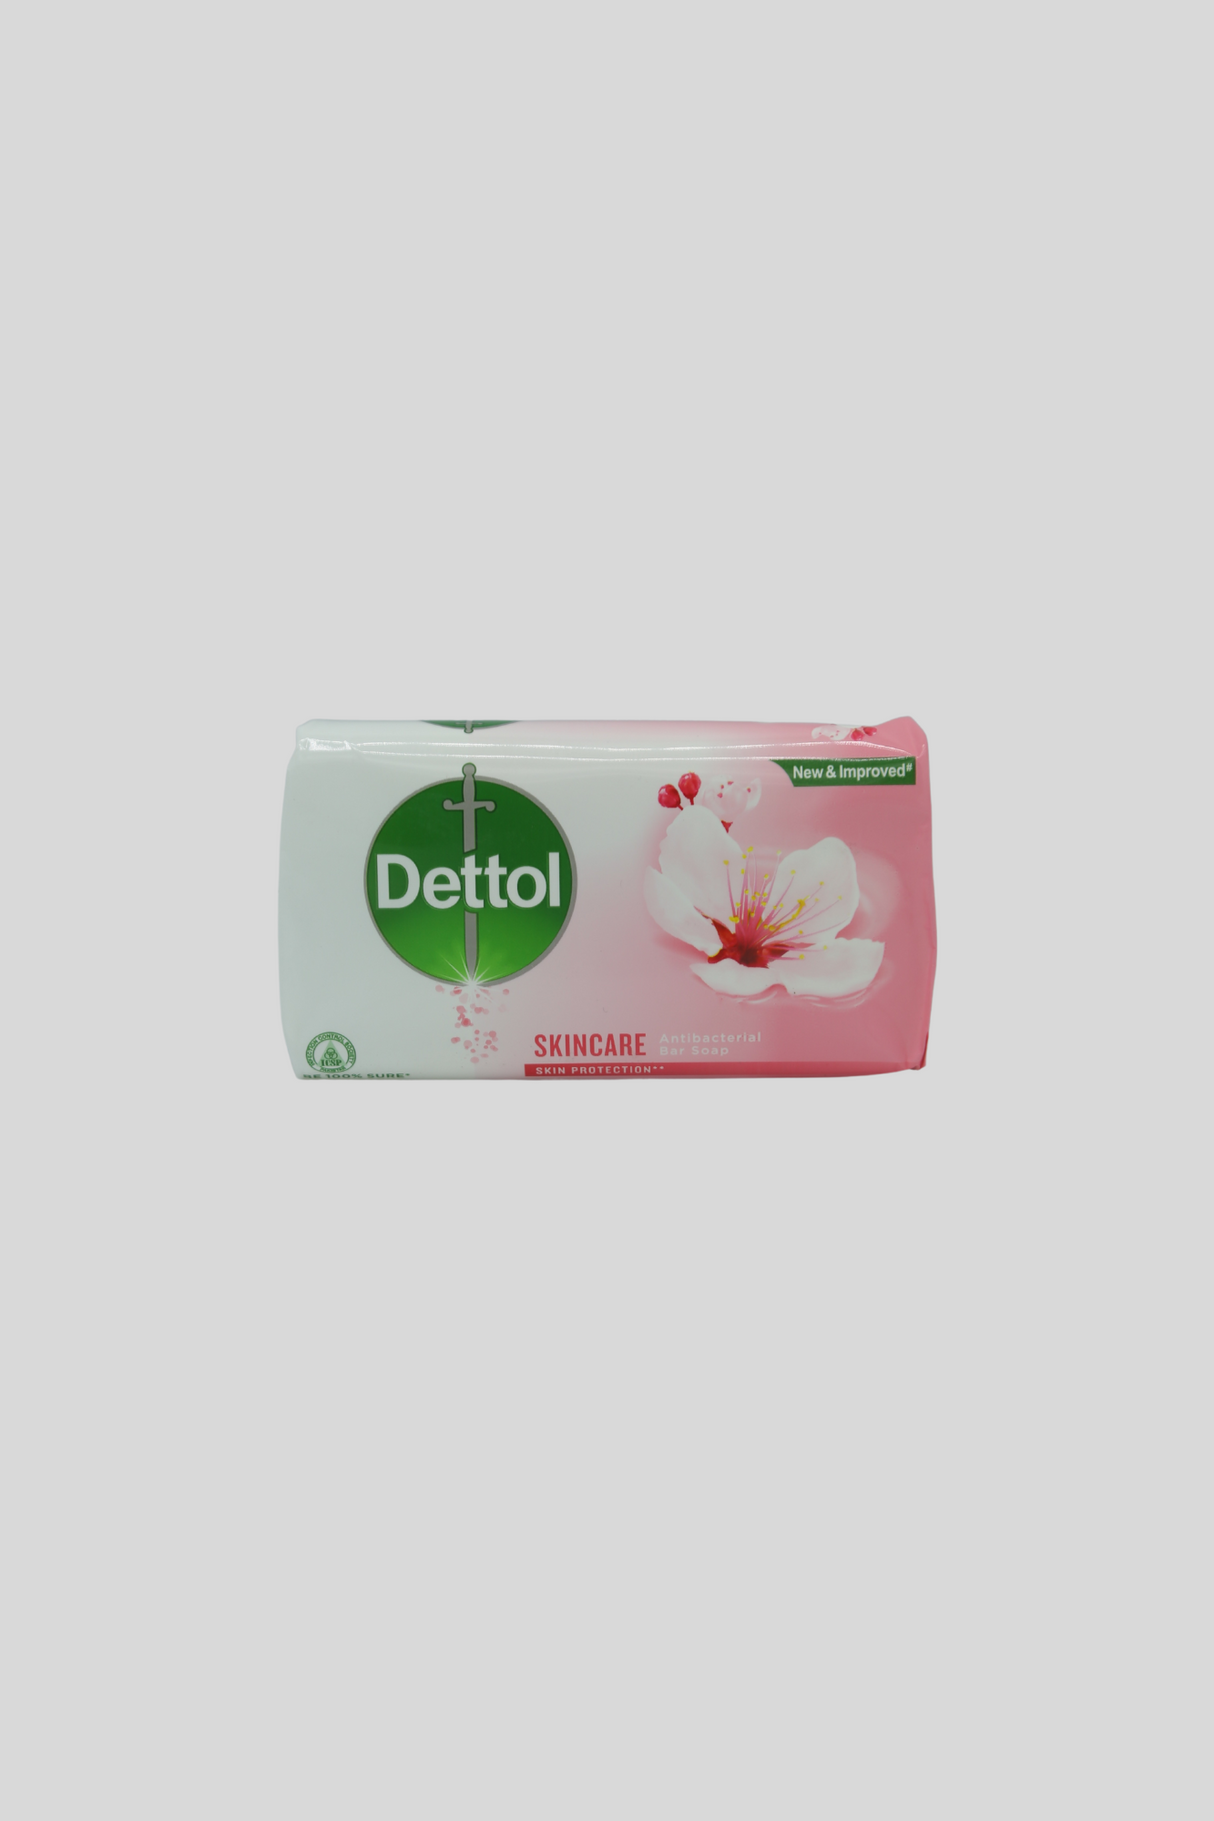 dettol soap skin care 160g